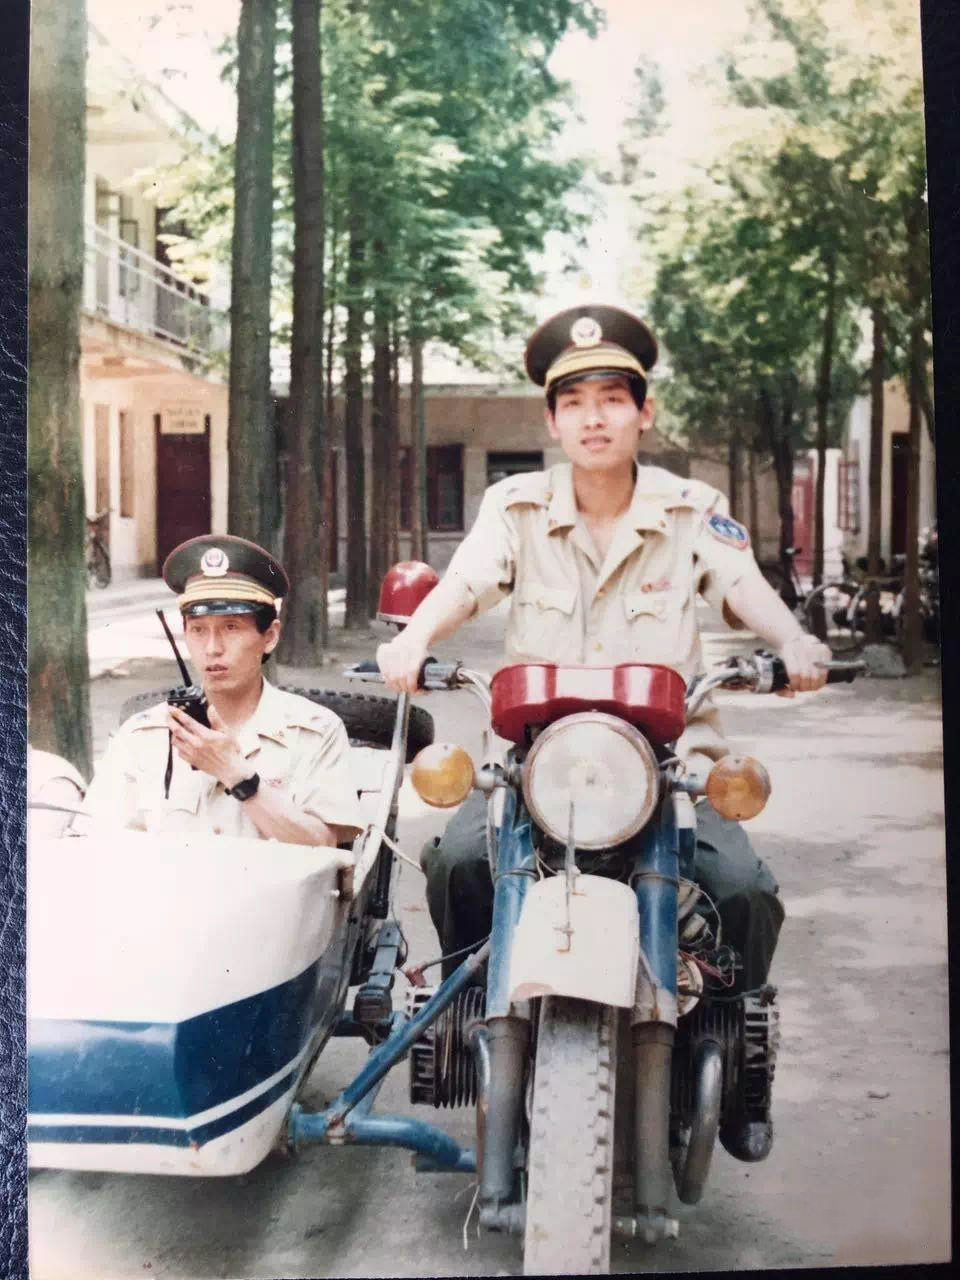 上世纪90年代初,当涂县公安局民警驾驶老式边三轮摩托车在出警路上.